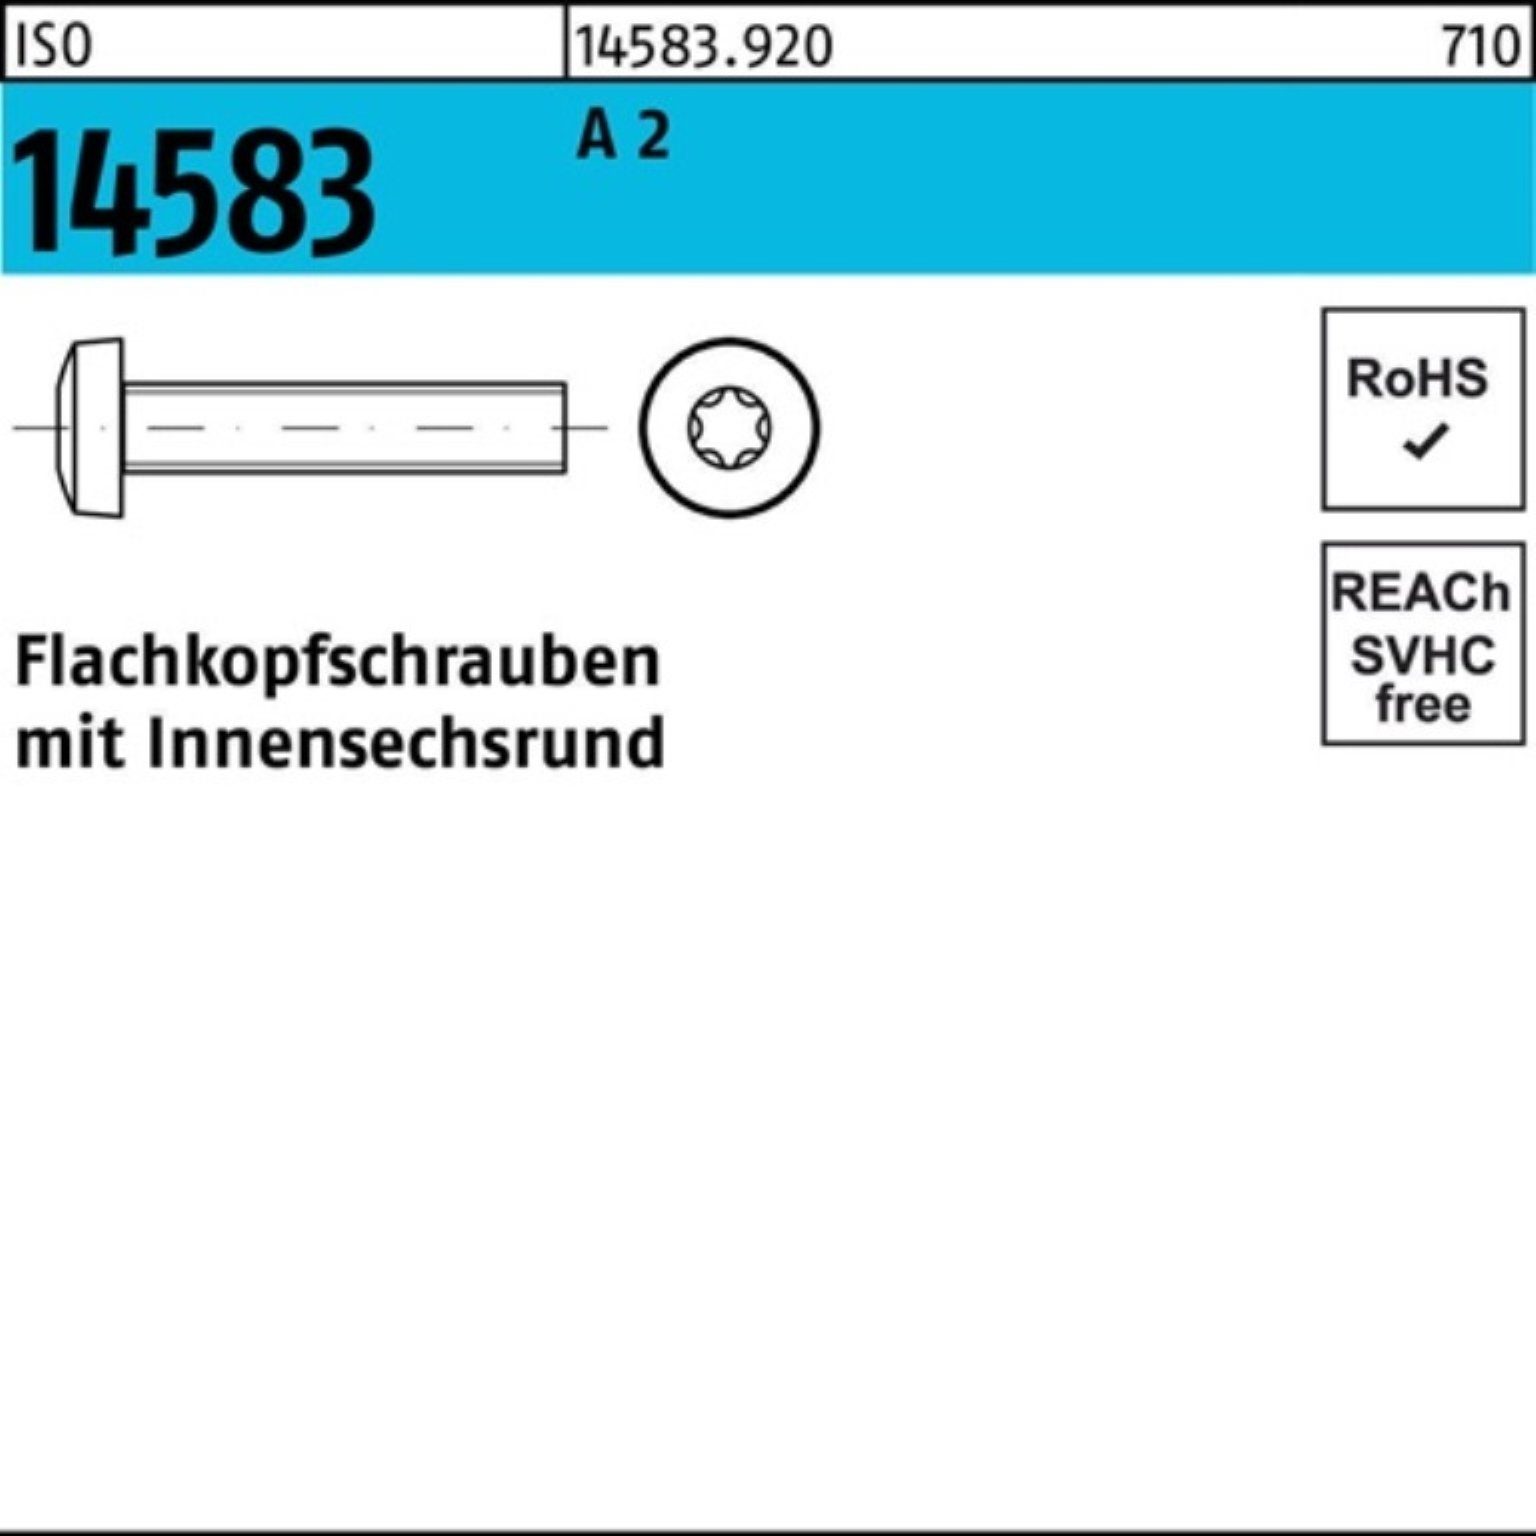 Stück M2x Pack 2 1000er Reyher Schraube Flachkopfschraube 14583 1000 ISR 16 A ISO ISO